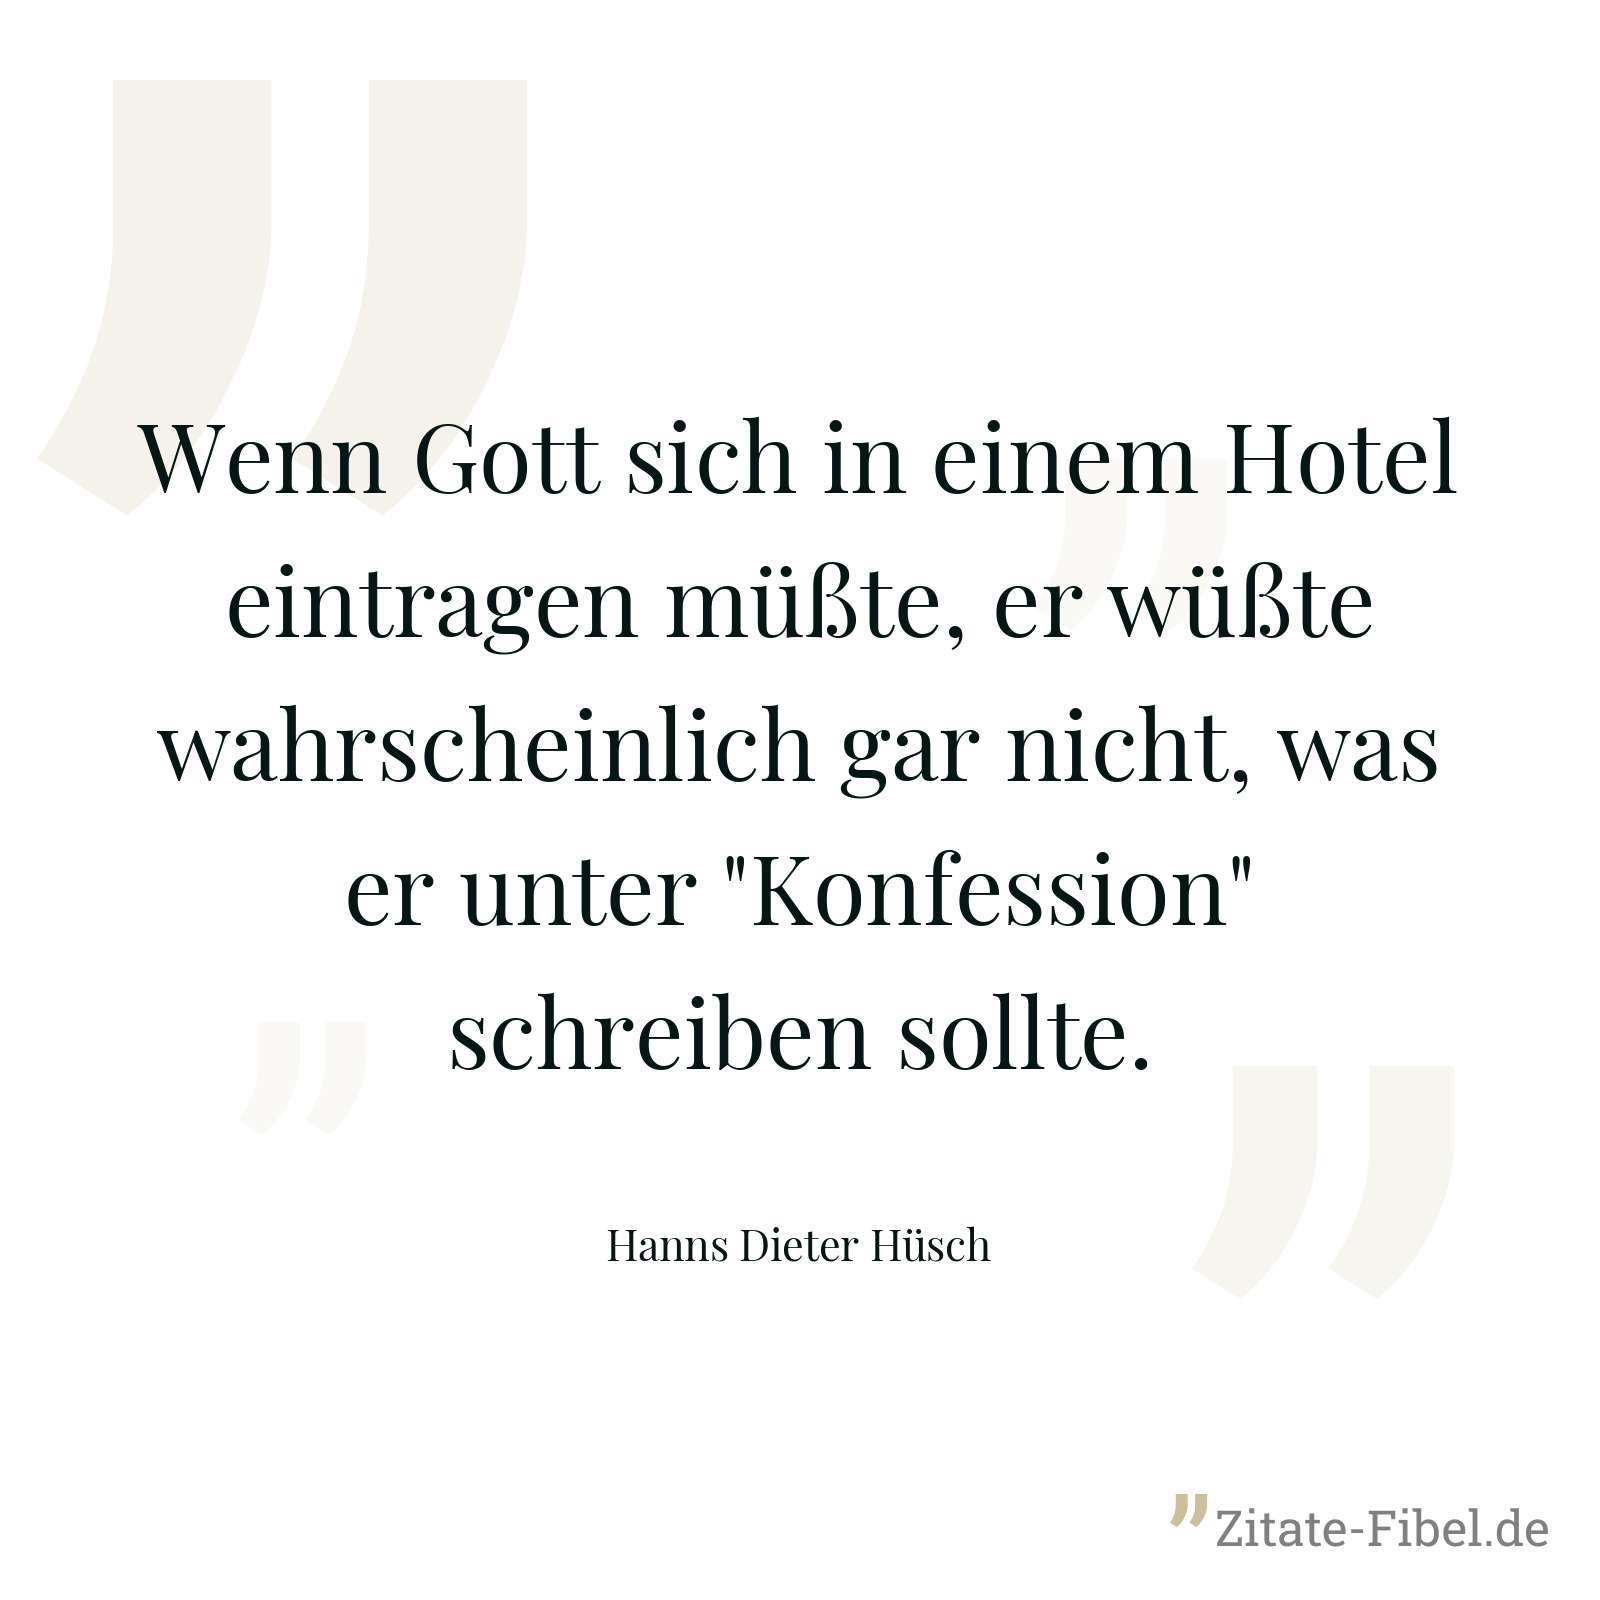 Wenn Gott sich in einem Hotel eintragen müßte, er wüßte wahrscheinlich gar nicht, was er unter "Konfession" schreiben sollte. - Hanns Dieter Hüsch